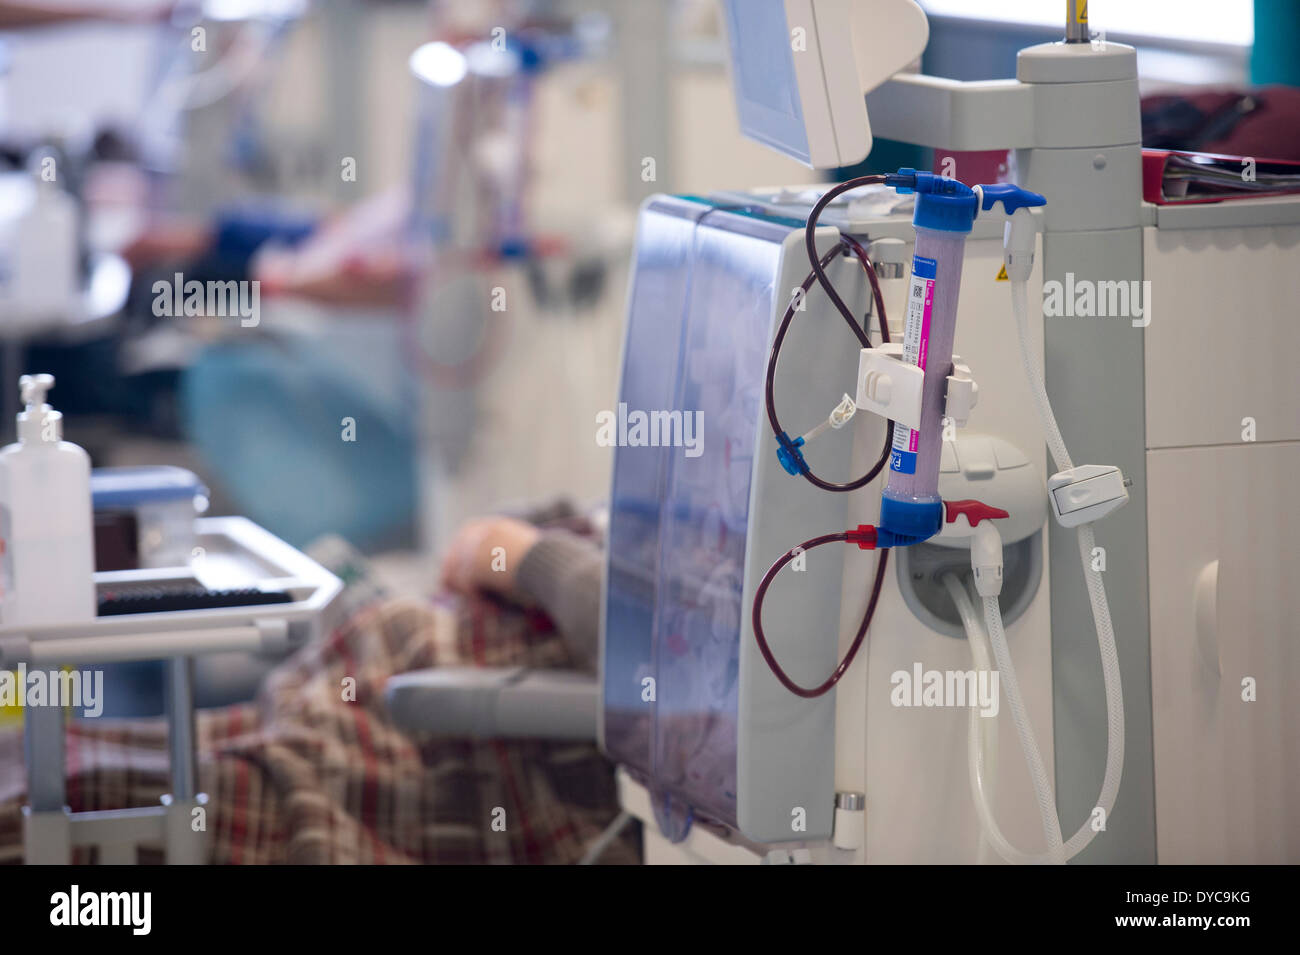 Un patient de dialyse rénale reçoit le traitement de l'insuffisance rénale dans un hôpital du NHS. Banque D'Images